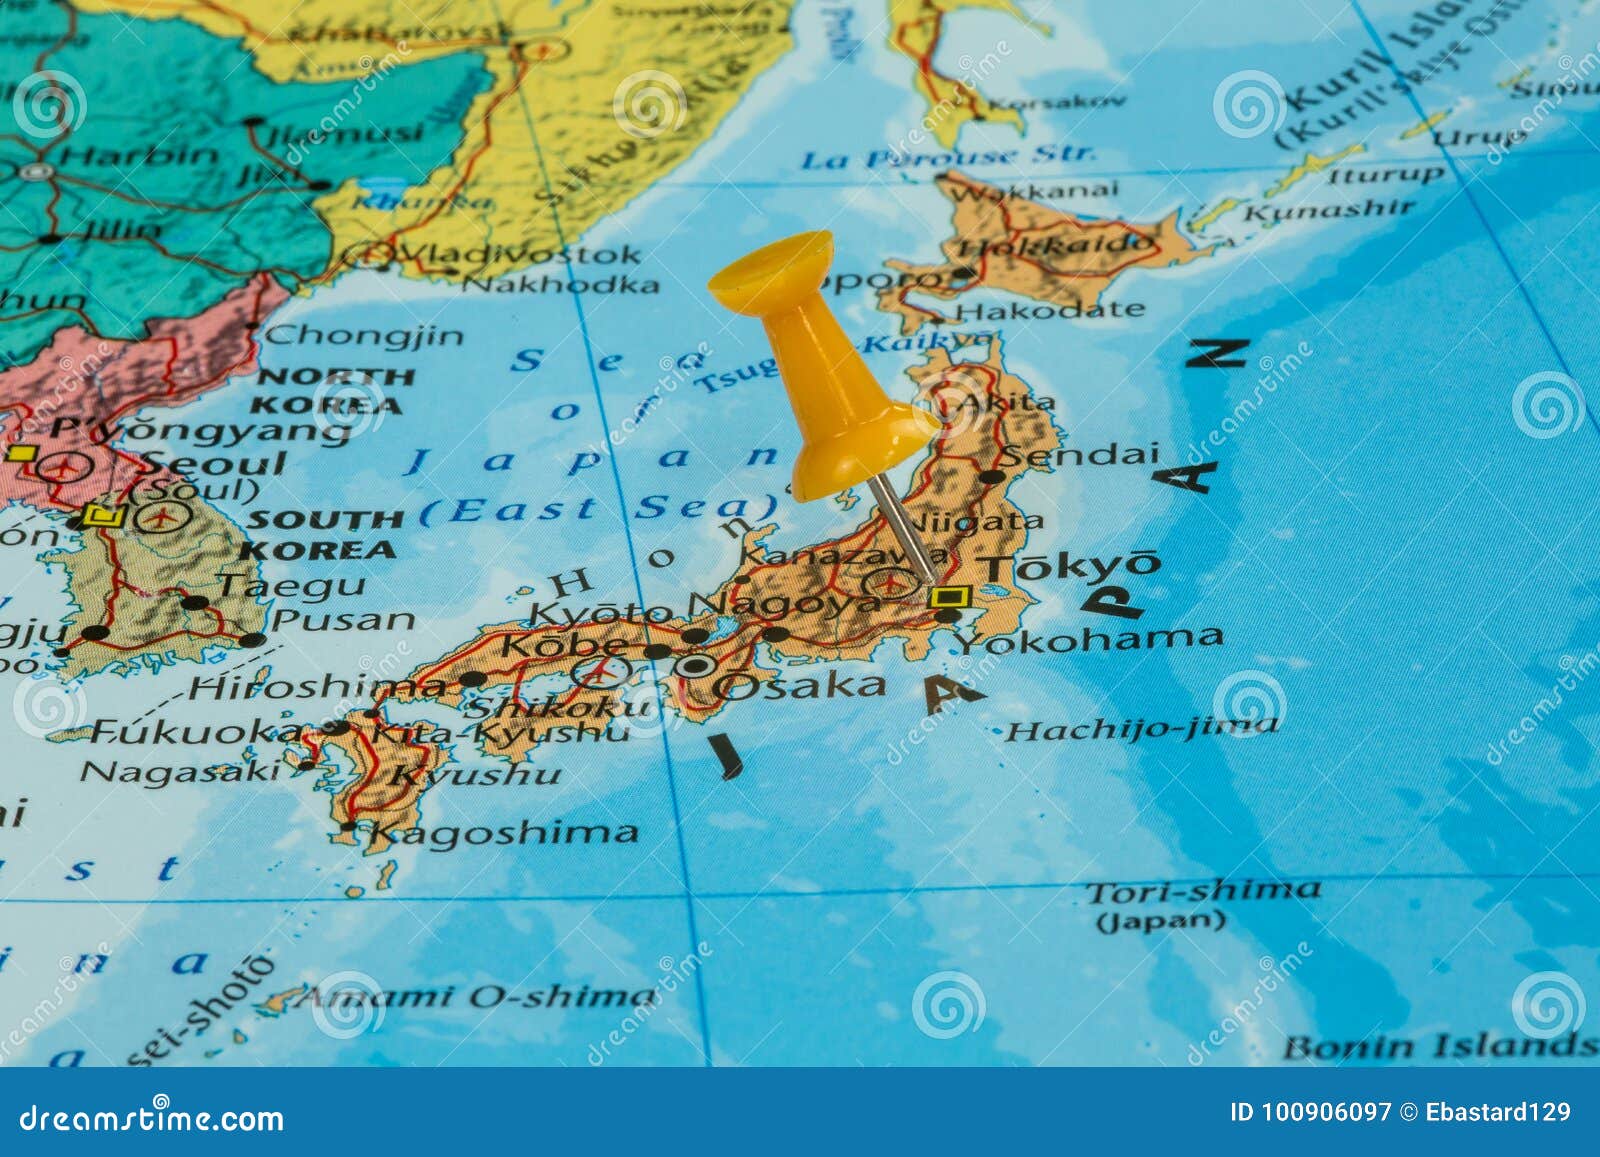 Karte von Japan stockbild Bild von rand staatsverwaltung 